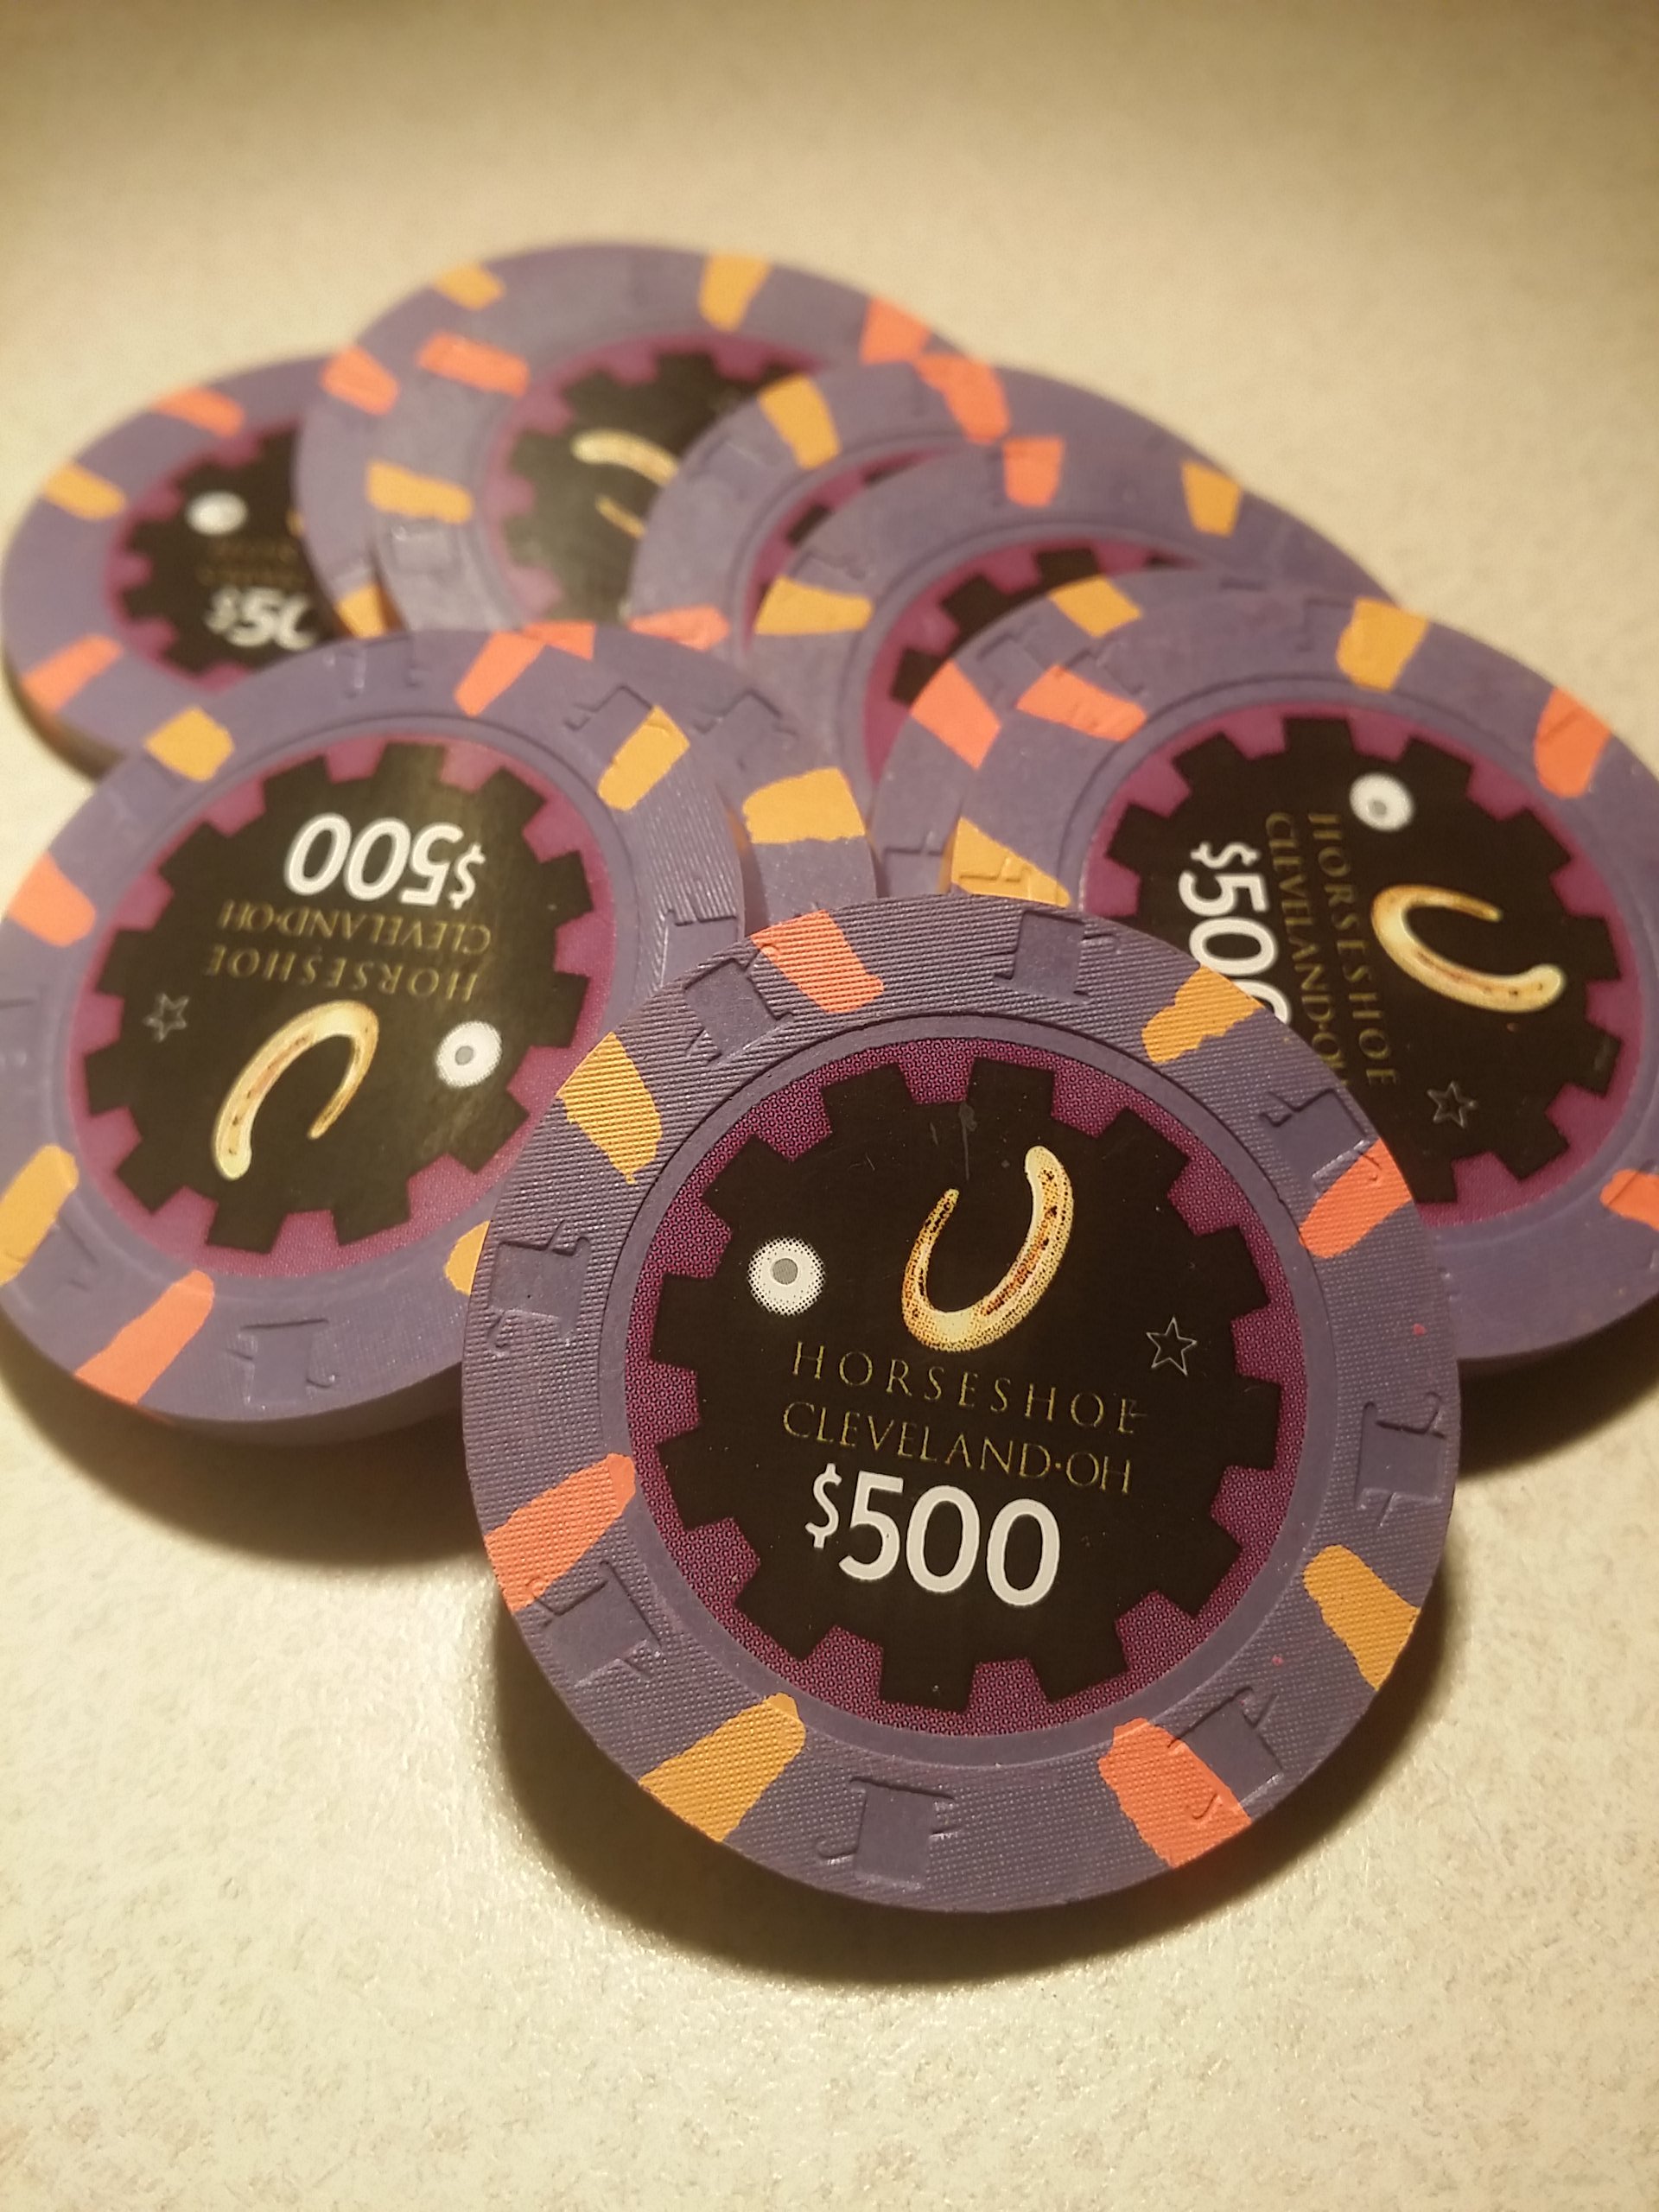 $500 Horseshoe Casino Chip 2012 Cleveland 1 Ohio 